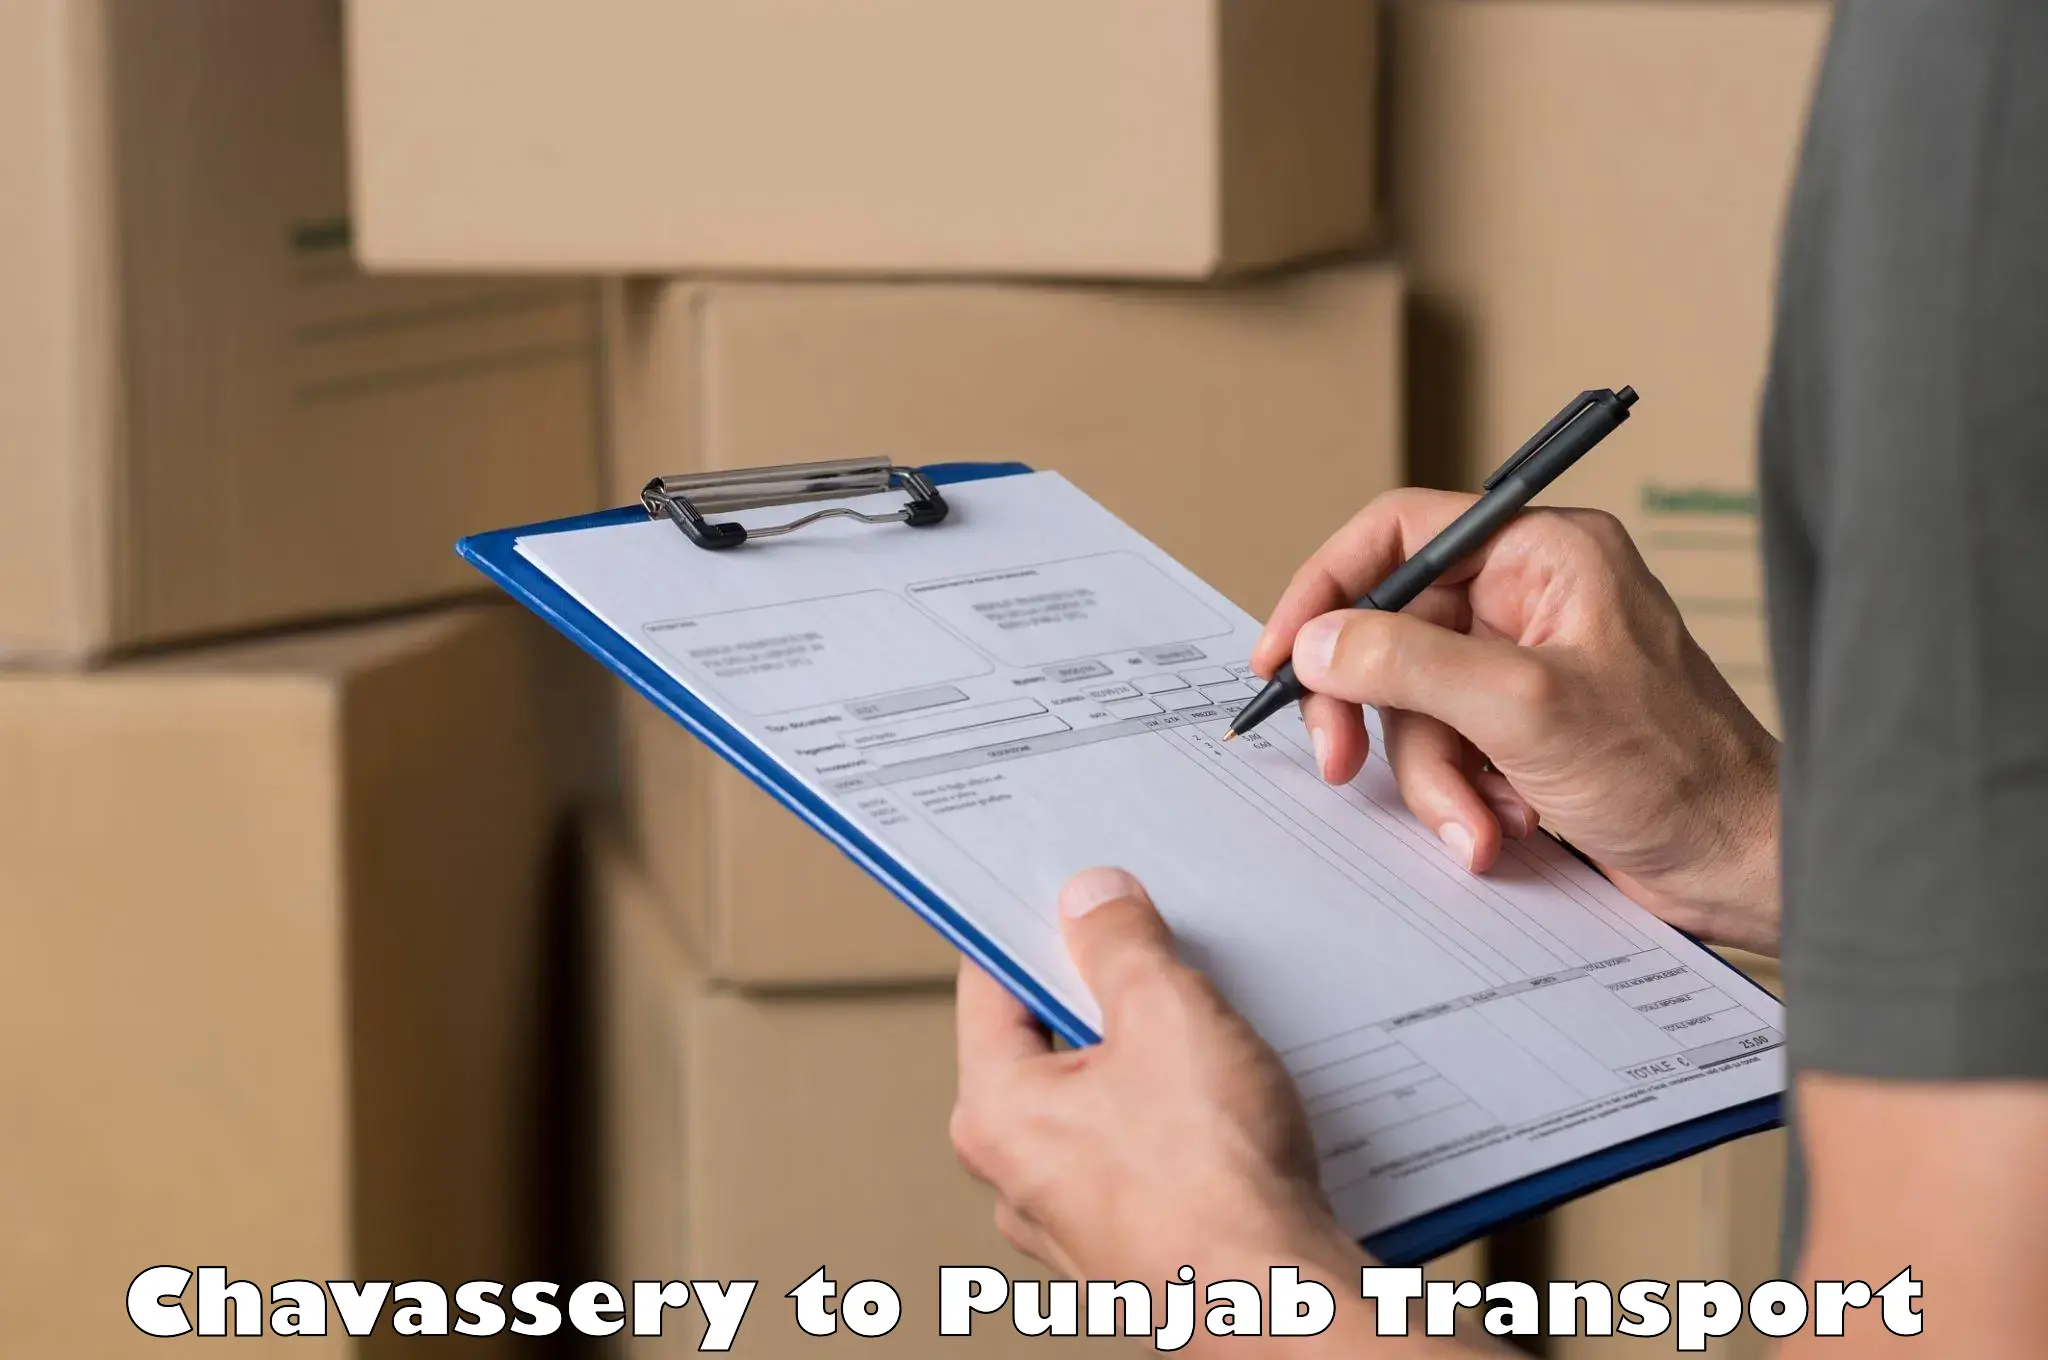 Bike shipping service Chavassery to Punjab